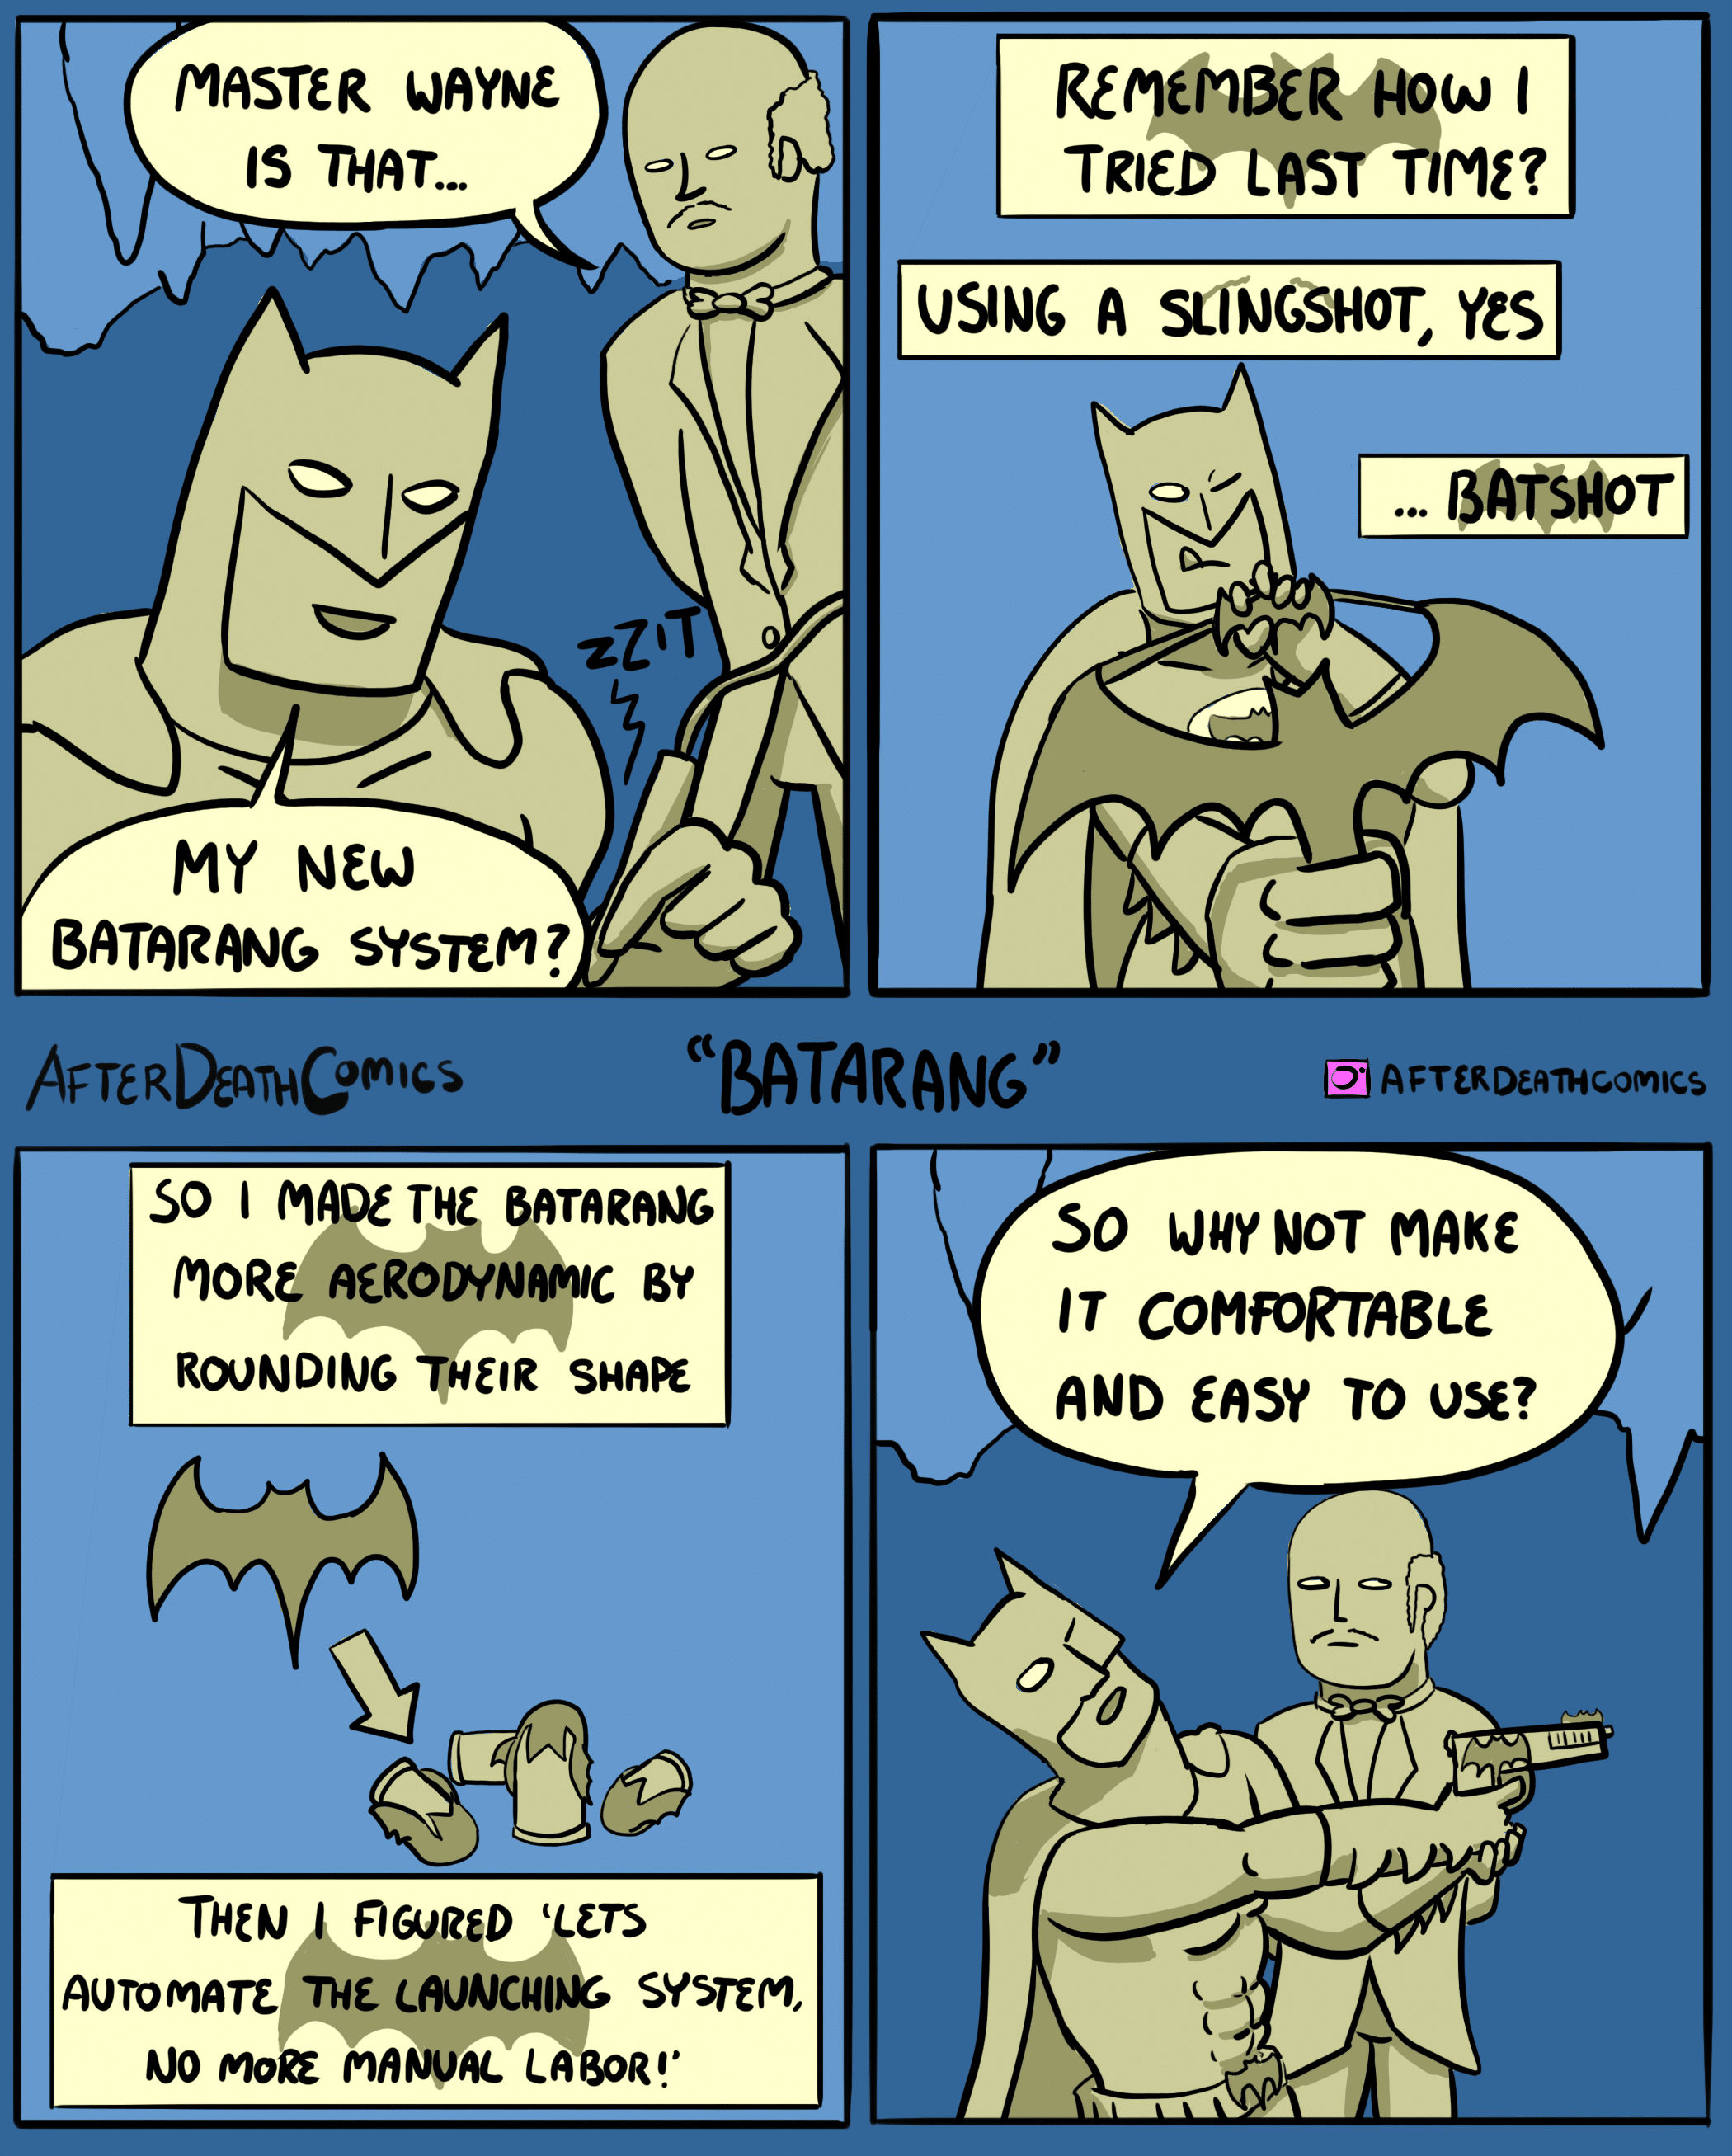 Batarang, Batarang Comics Batarang, Batarang text: ις ΠΙΑΤ... ΜΥ Νεω 6ΥςπΜ?. SO Ι ΜΑοε ΤΗξ ιηοαε βγ τ,ΗξΙ2 ΤΗΕ